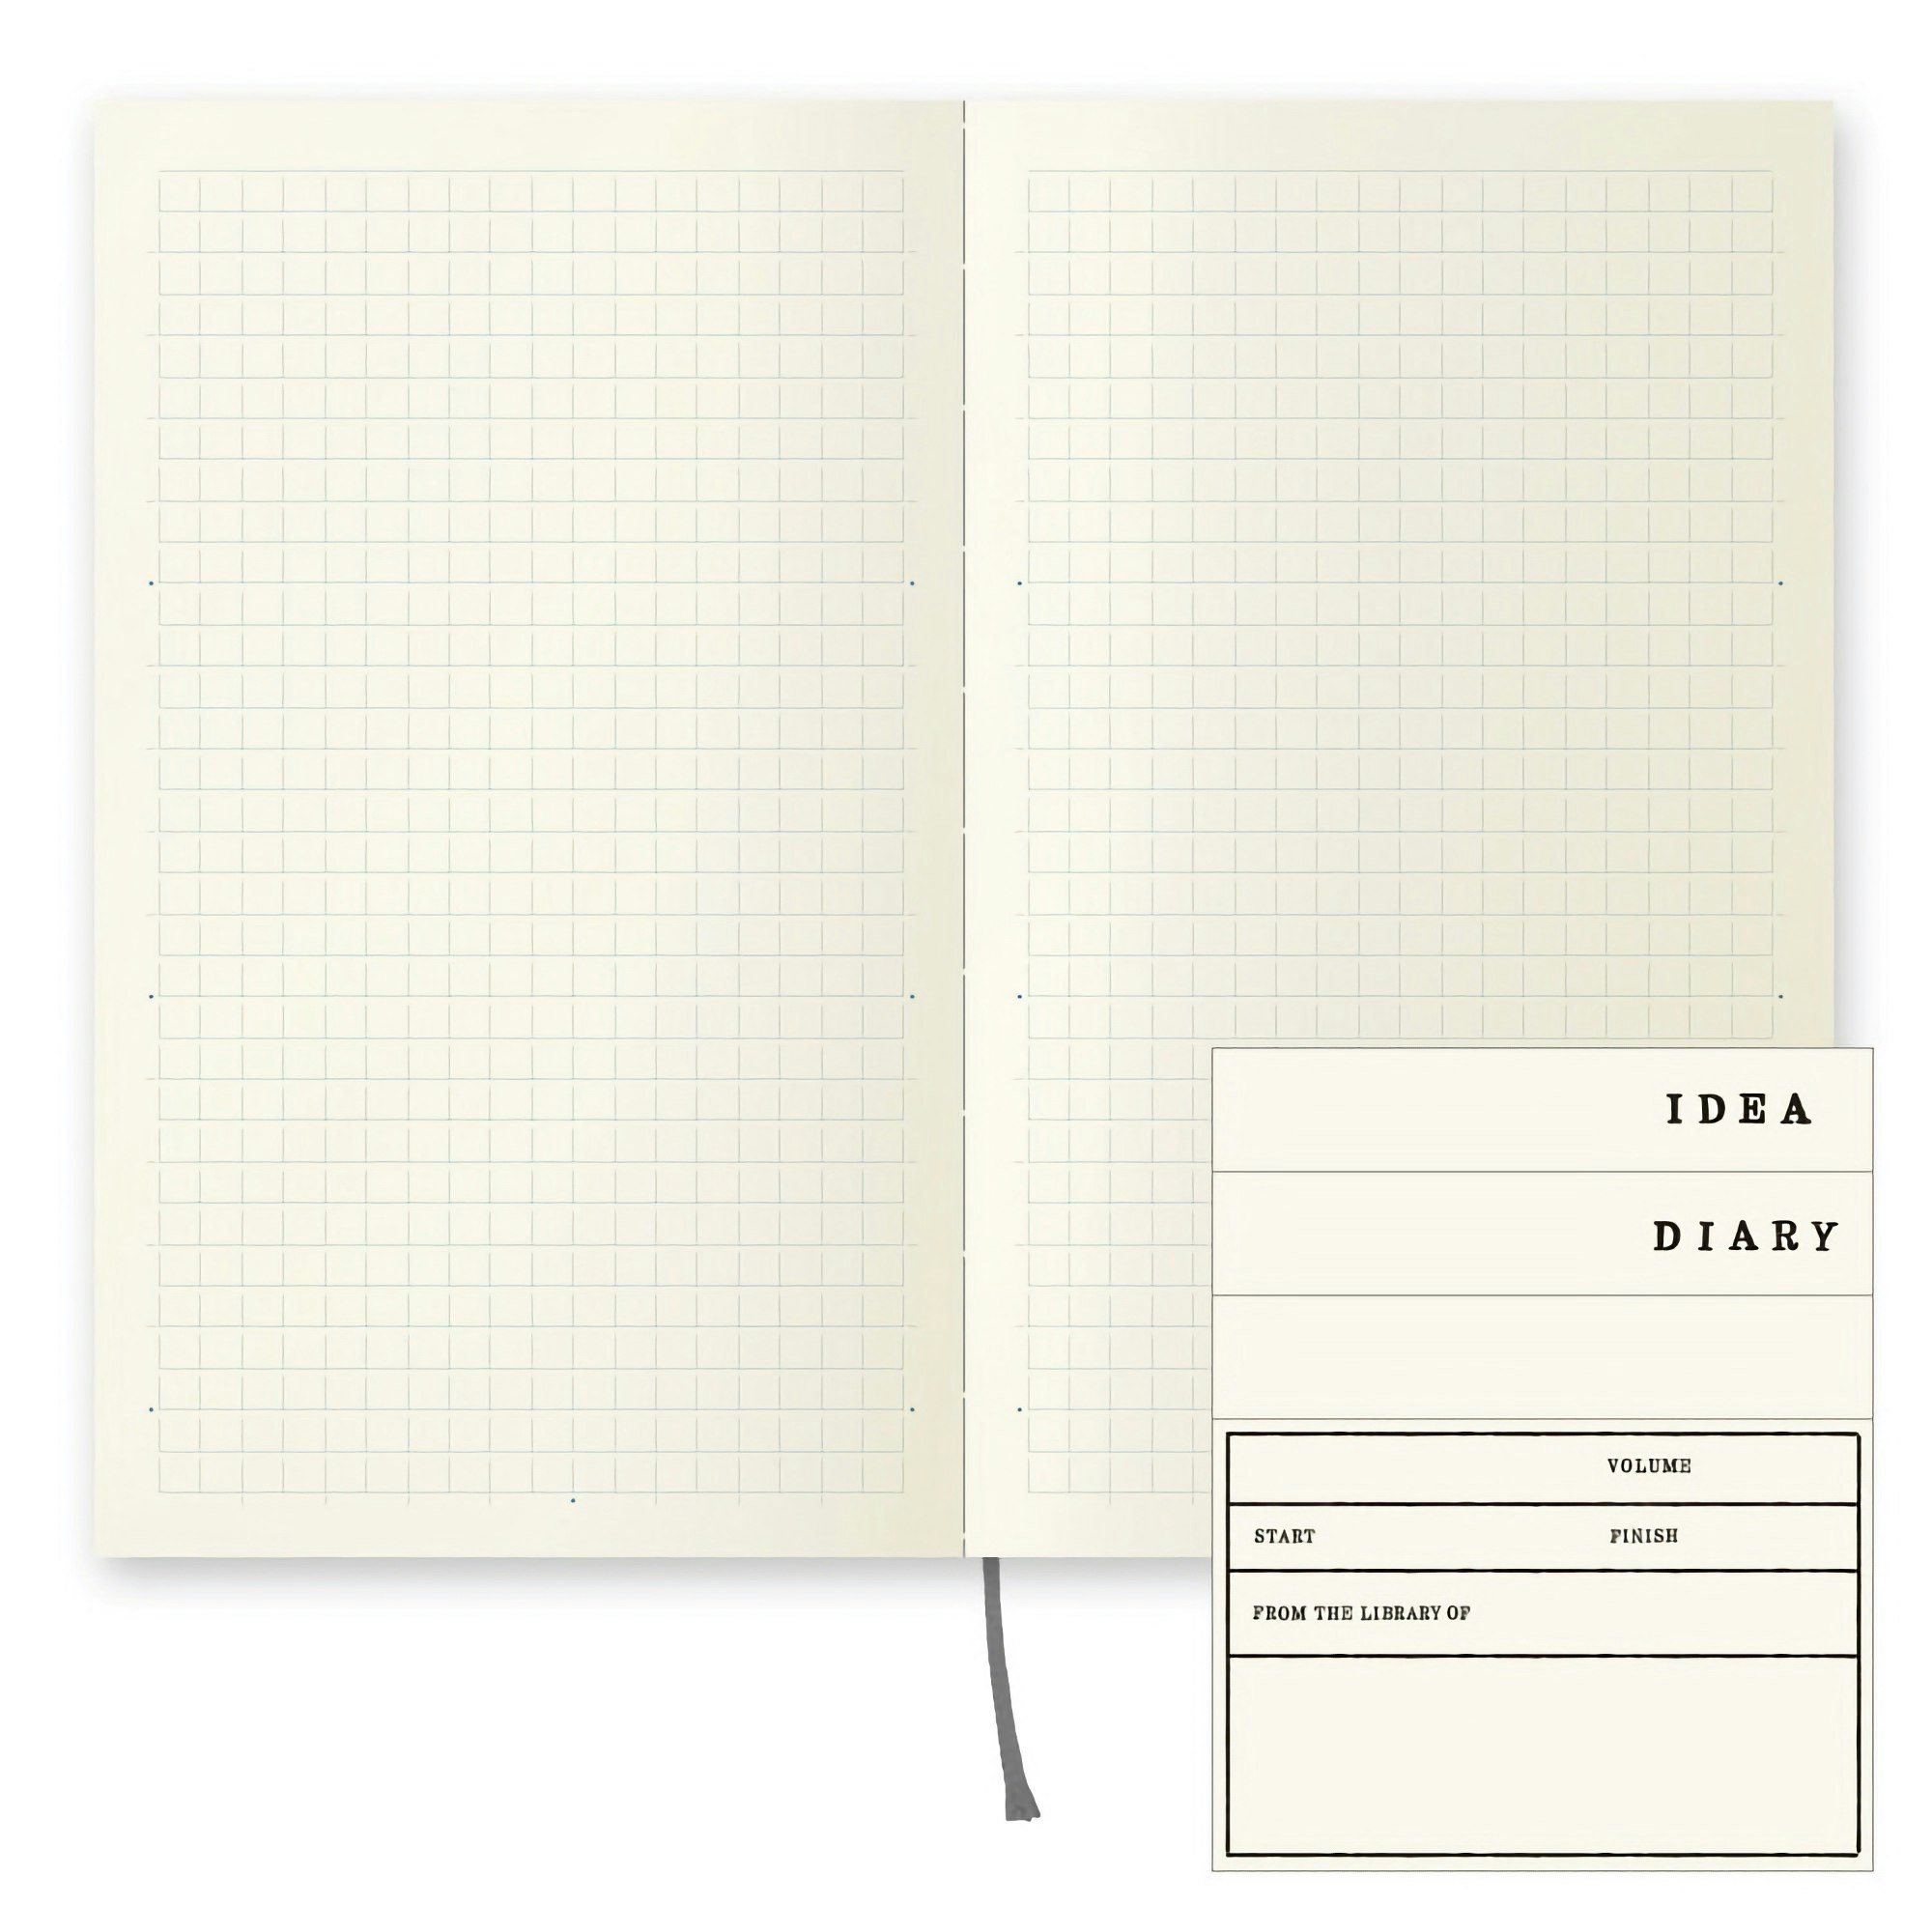 Midori MD Notebook [B6 Slim] Rutad